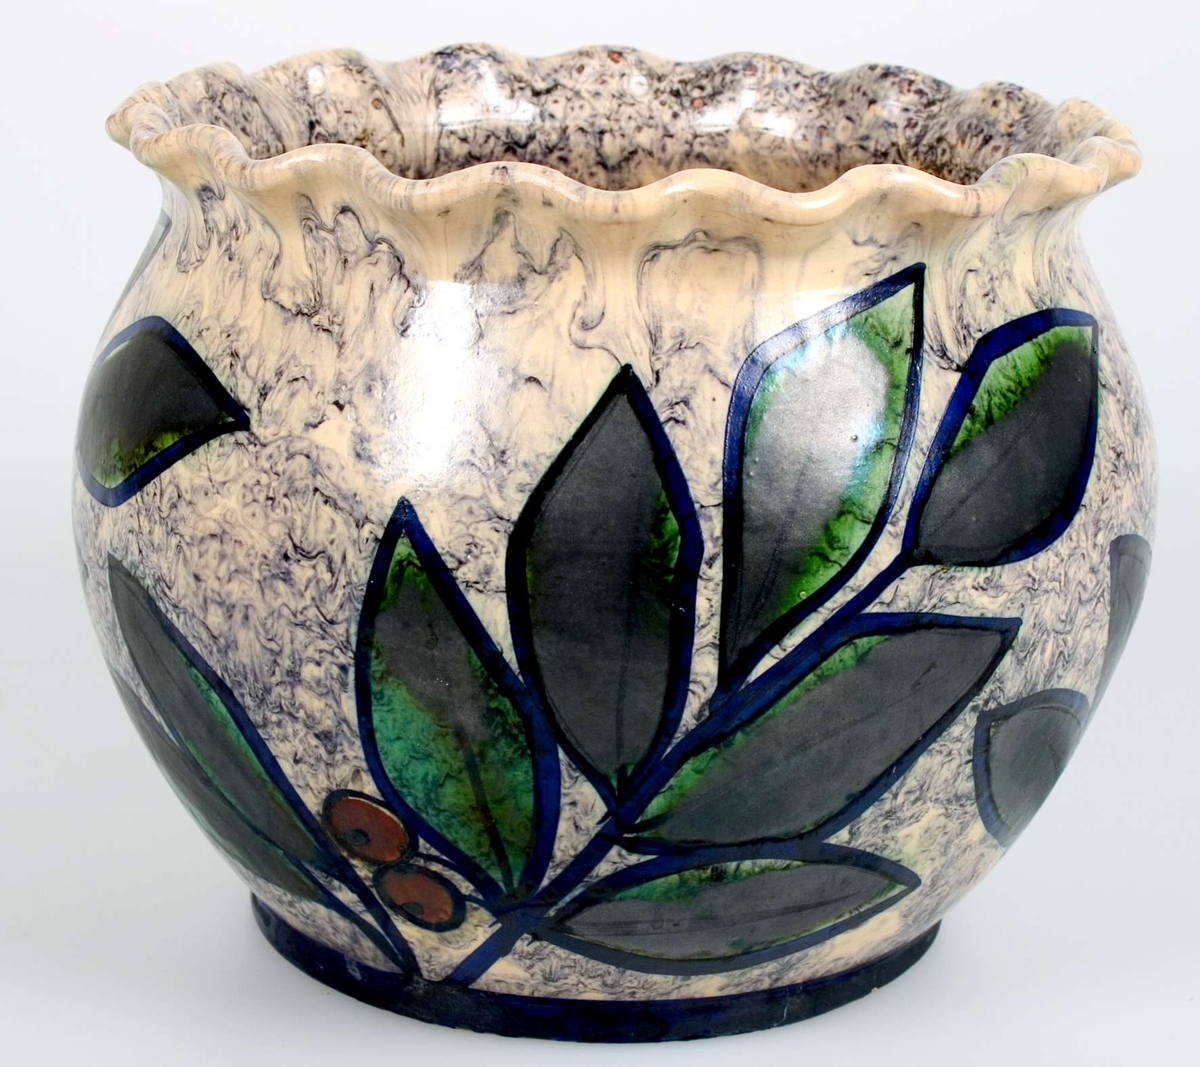 Blomkruka av mattglaserat lergods. Blåvit marmorerad botten med körsbärskvistar i blått, grönt och rött. Inristat i botten: UE 1956 e.


